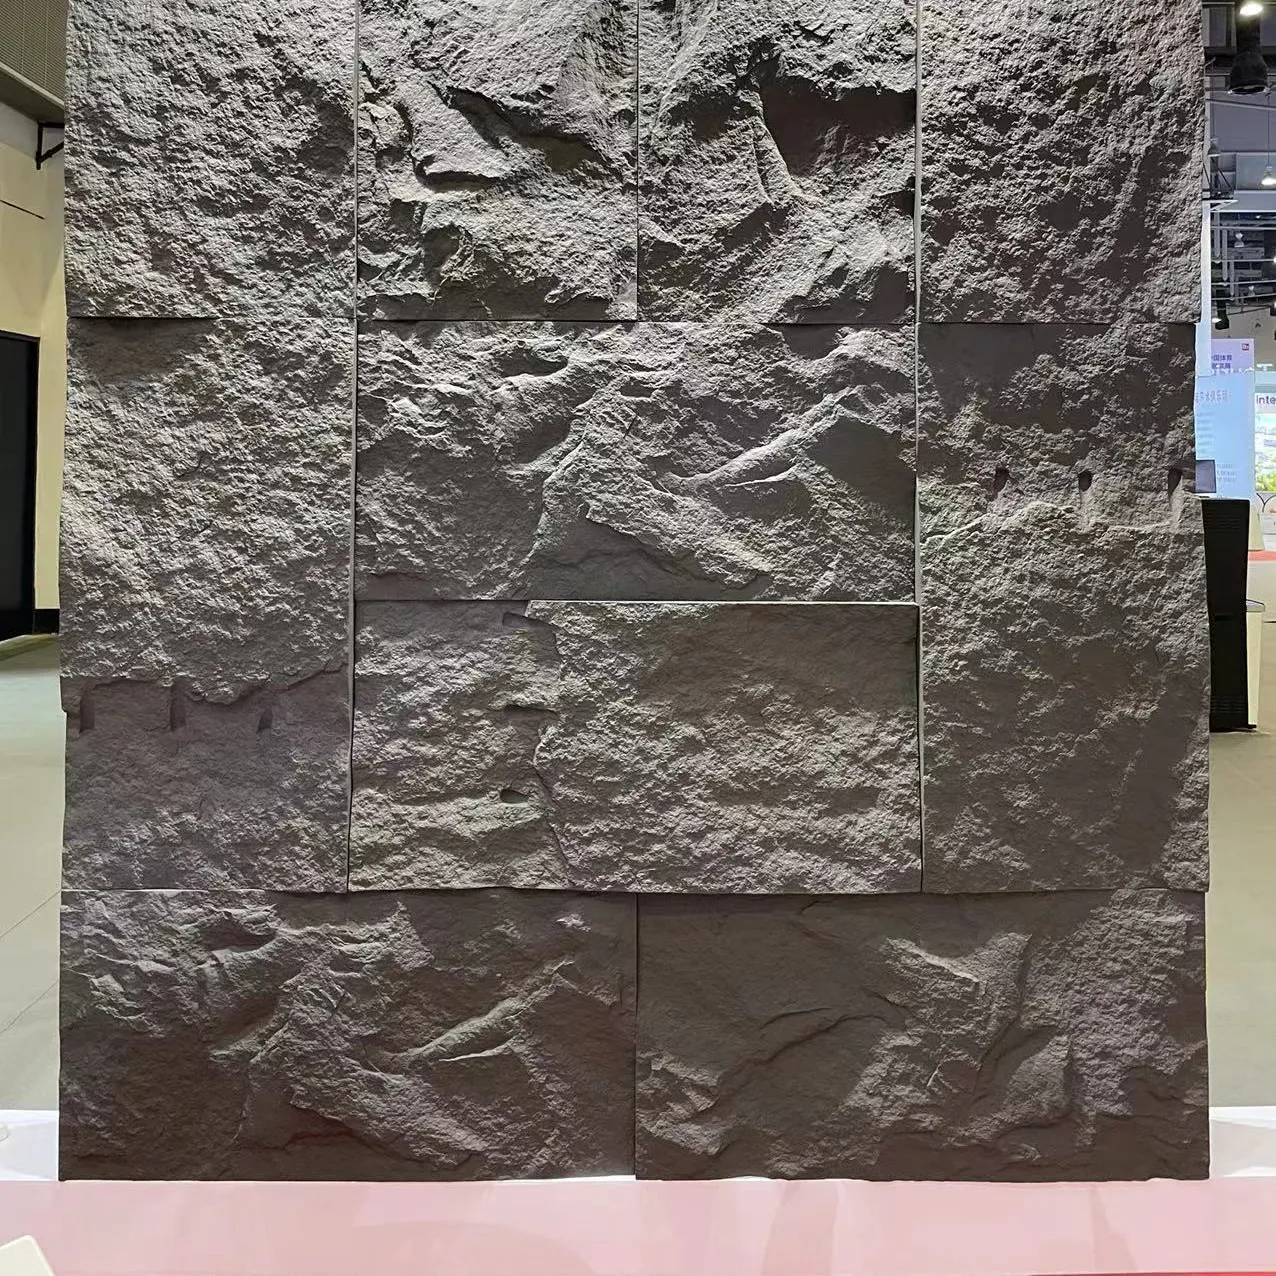 نيو 3D بو القشرة الصخرية لوحة الحائط الحديثة الفاخرة قاعة مبنى المكاتب الحجر الاصطناعي